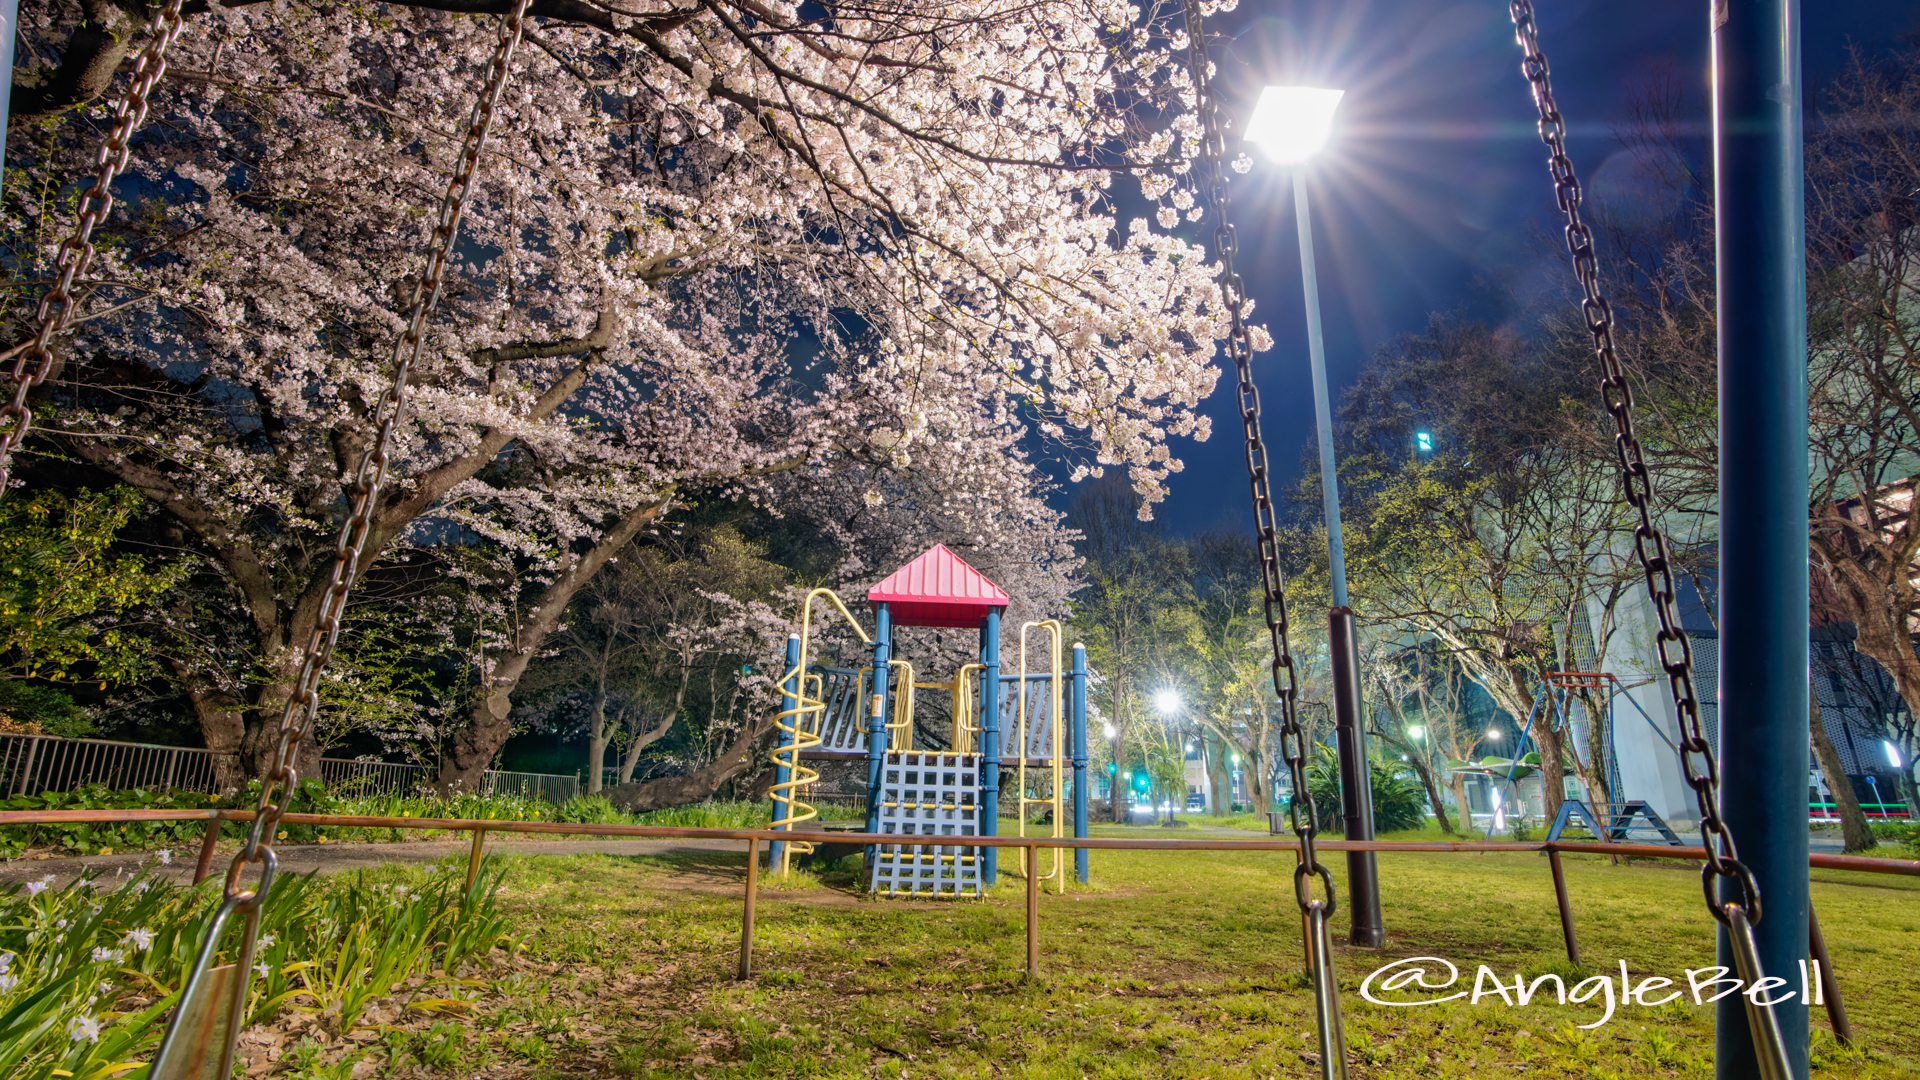 夜景 名城公園 ライオンヘルスパーク ブランコから見た桜と滑り台 2020